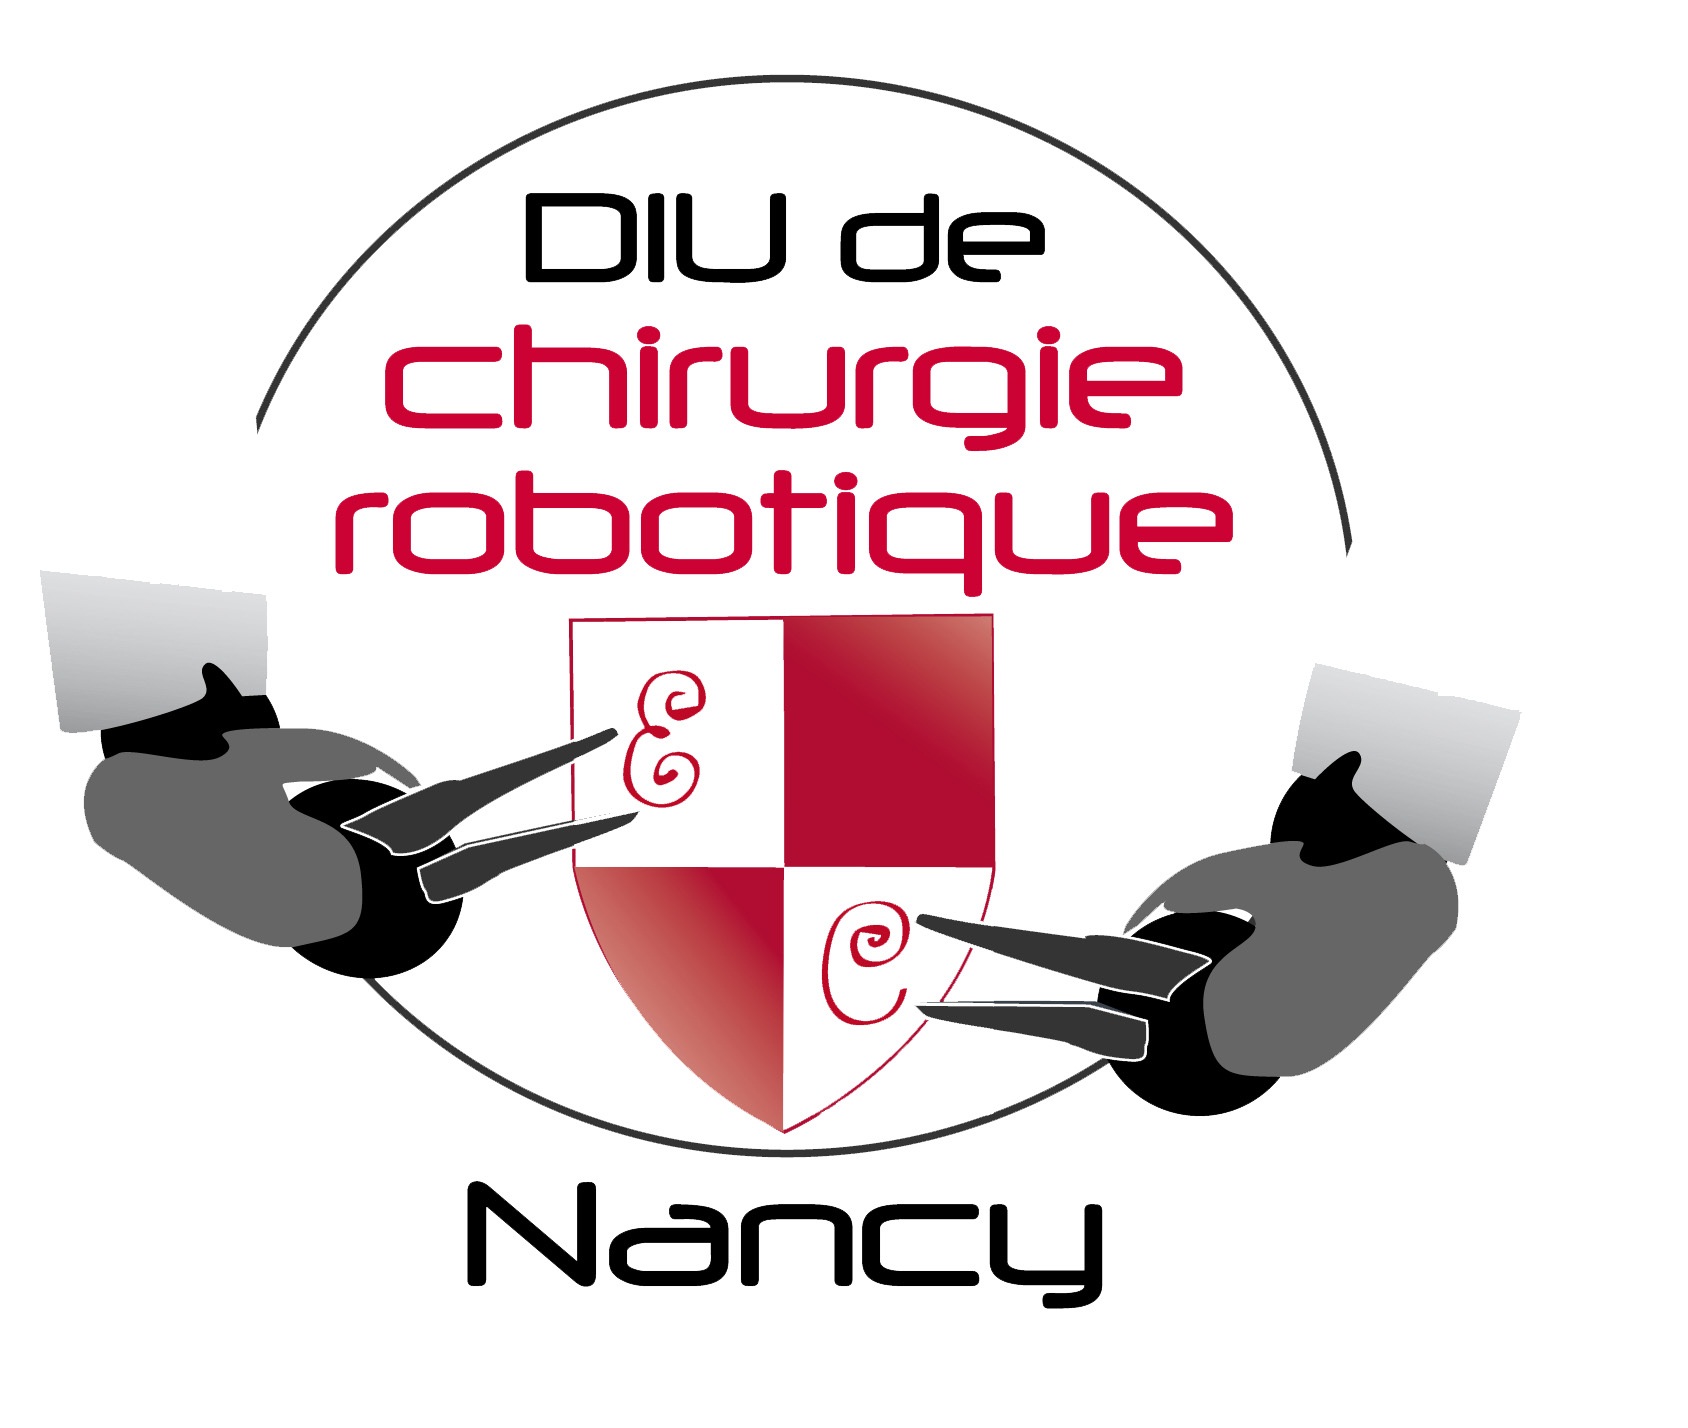 DIU de chirurgie robotique Nancy 2014 : Expérience en chirurgie Robotique digestive et endocrinienne